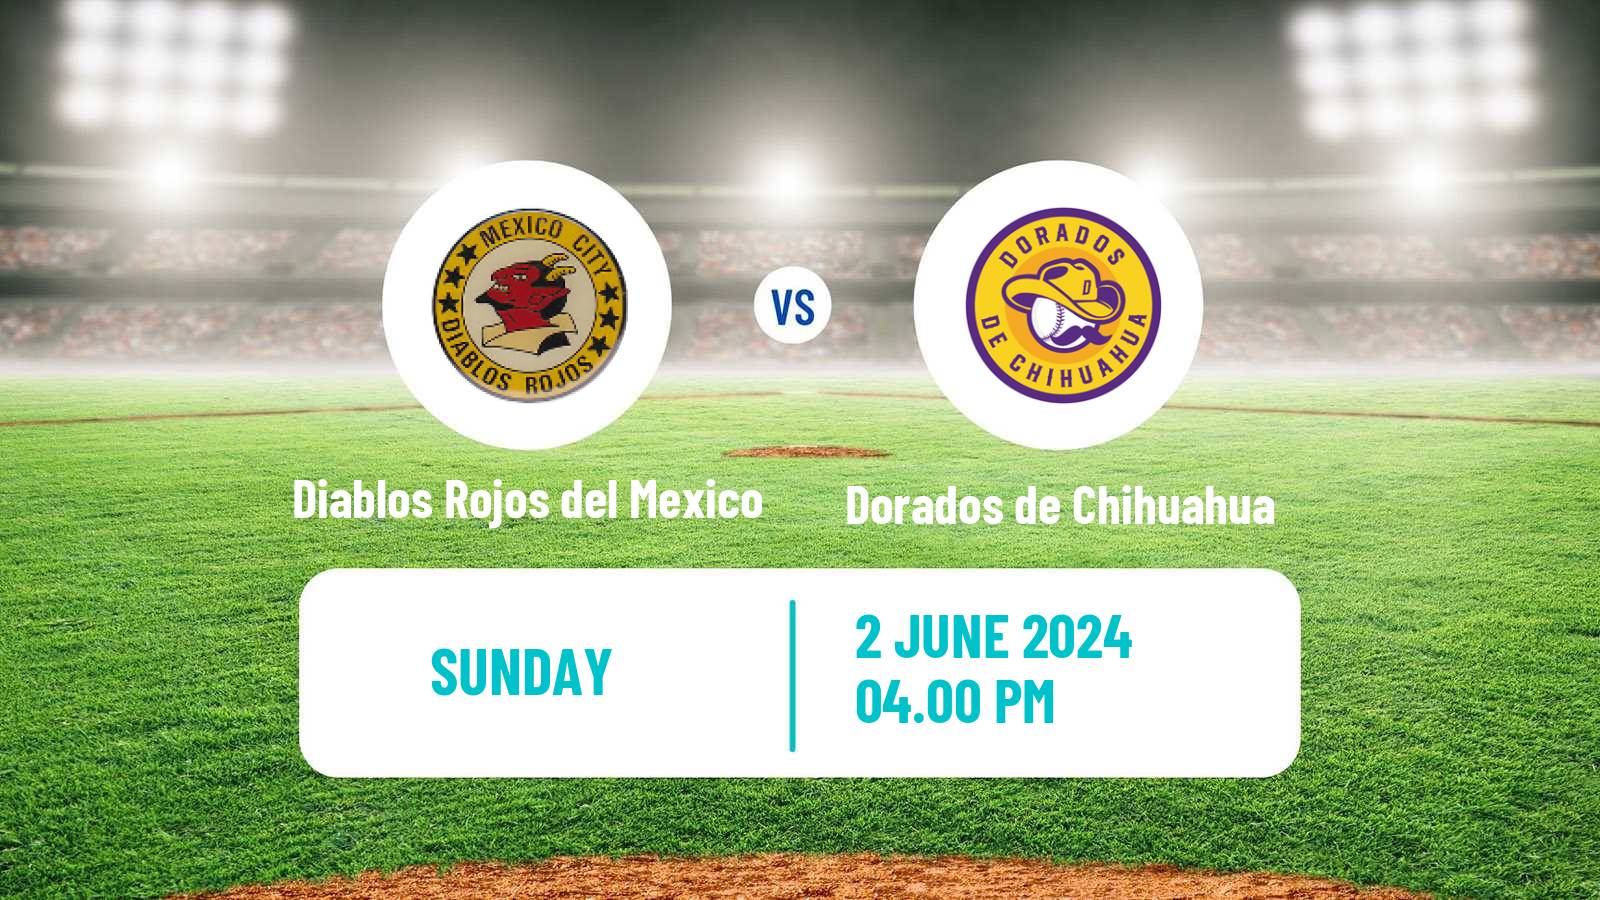 Baseball LMB Diablos Rojos del Mexico - Dorados de Chihuahua